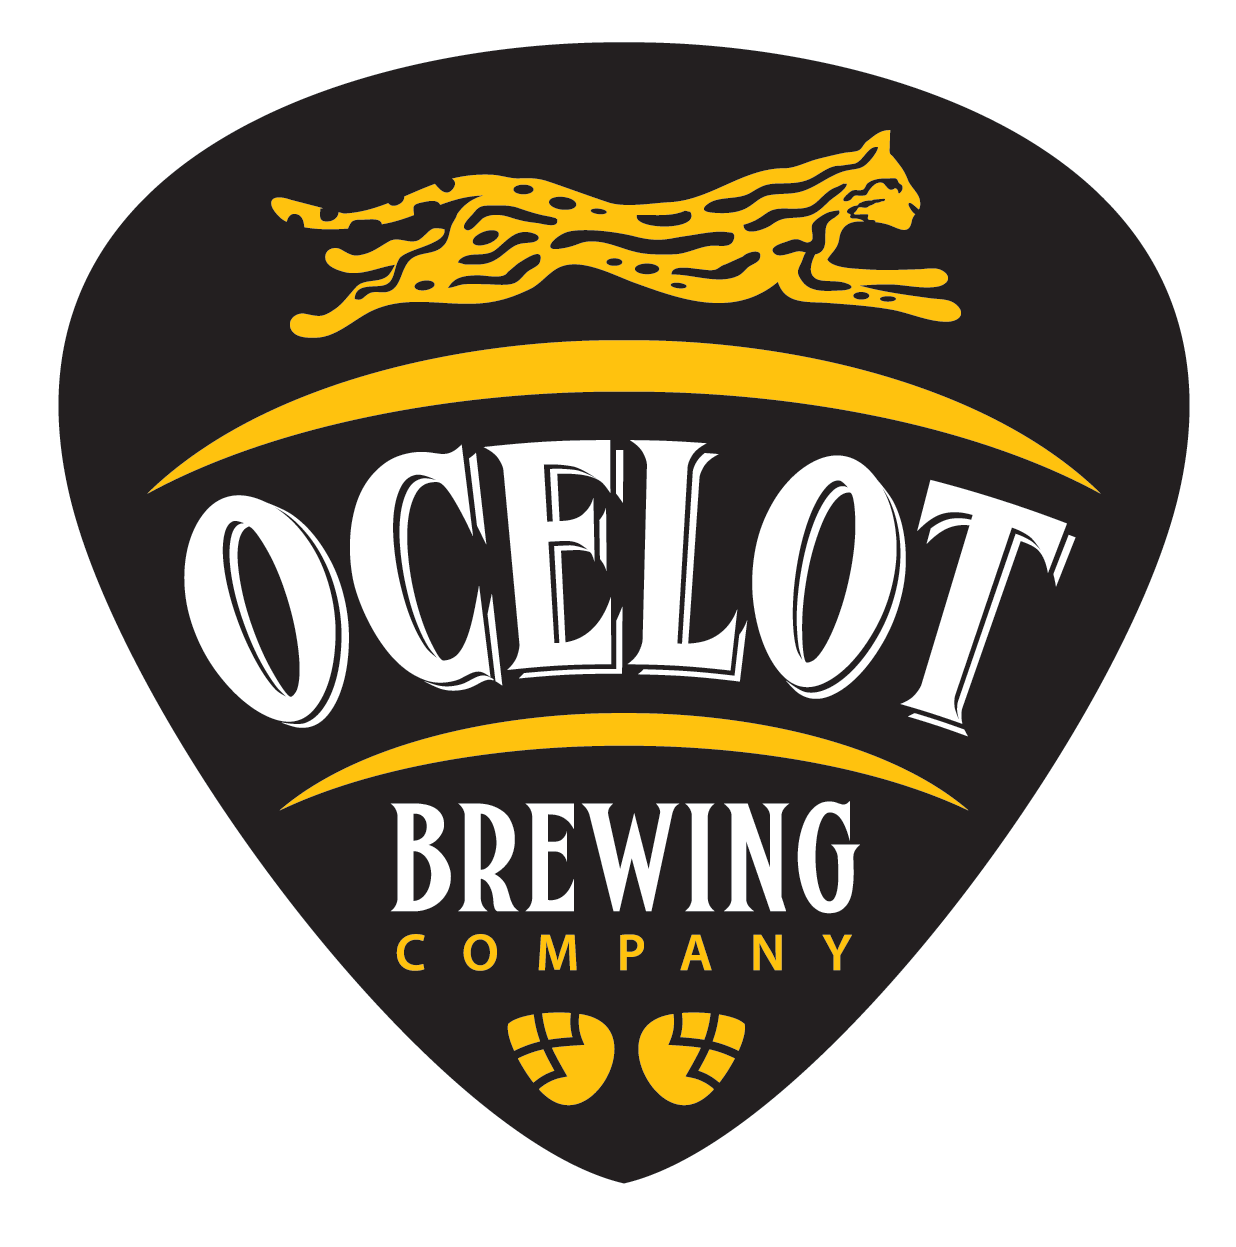 Ocelot Brewing Company jobs